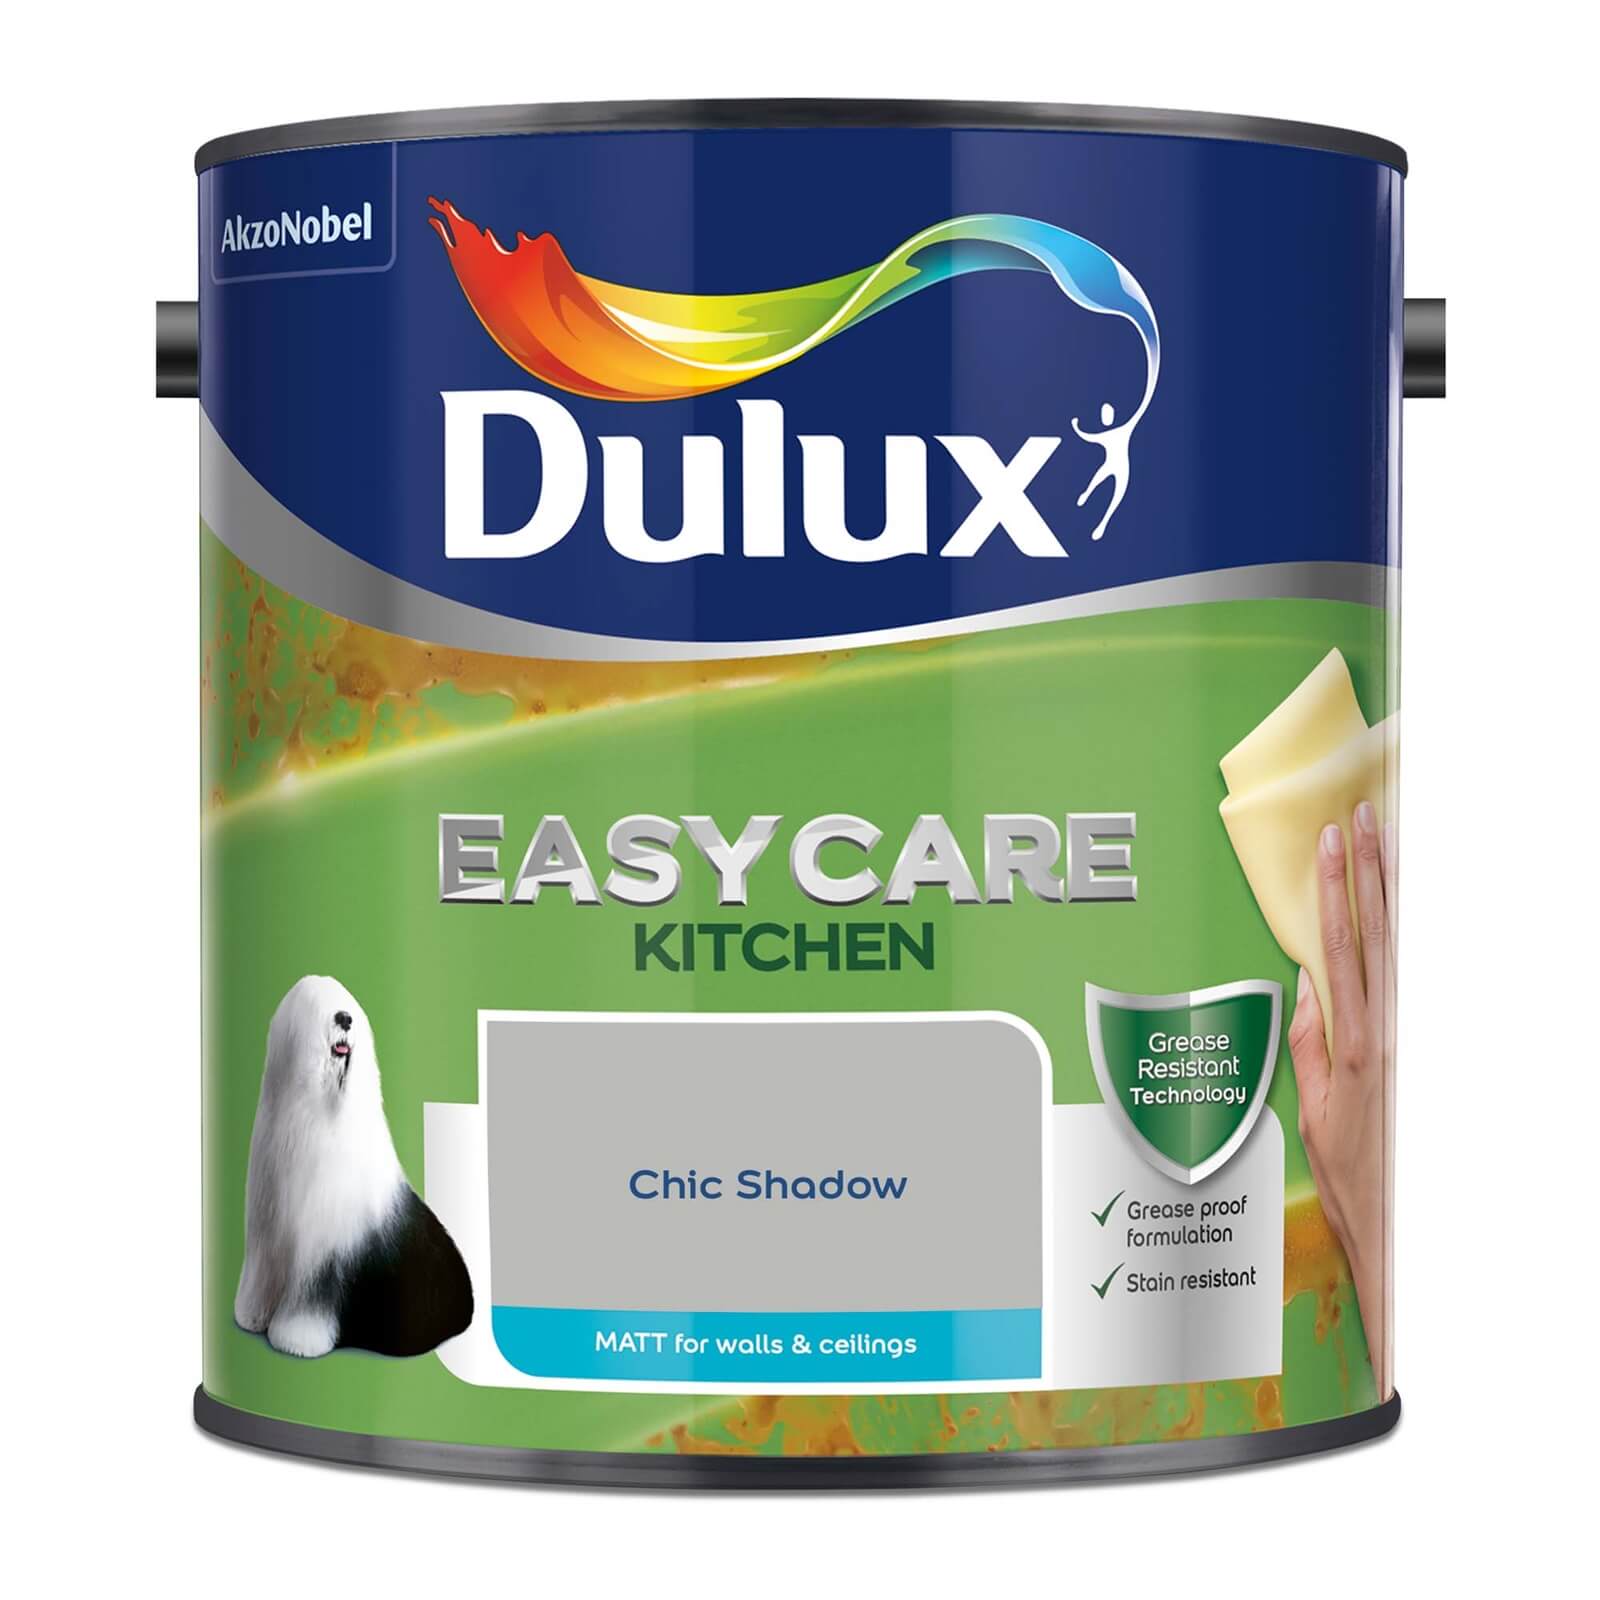 Dulux Easycare Kitchen Matt Emulsion Paint Chic Shadow - 2.5L